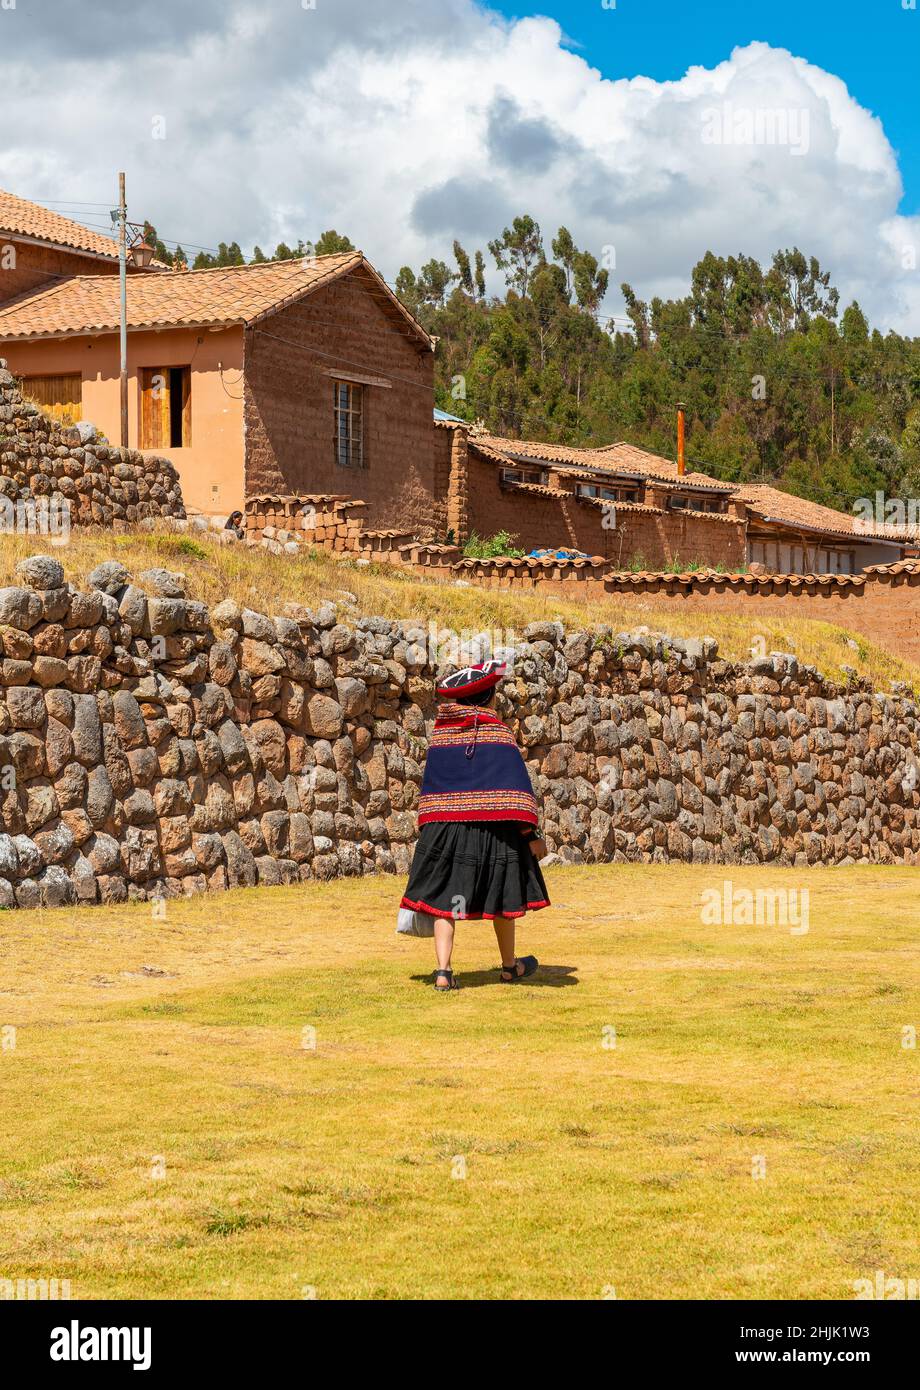 Péruvienne autochtone quechua femme en vêtements traditionnels marchant devant un mur inca de la ruine Chinchero inca, Pérou. Banque D'Images